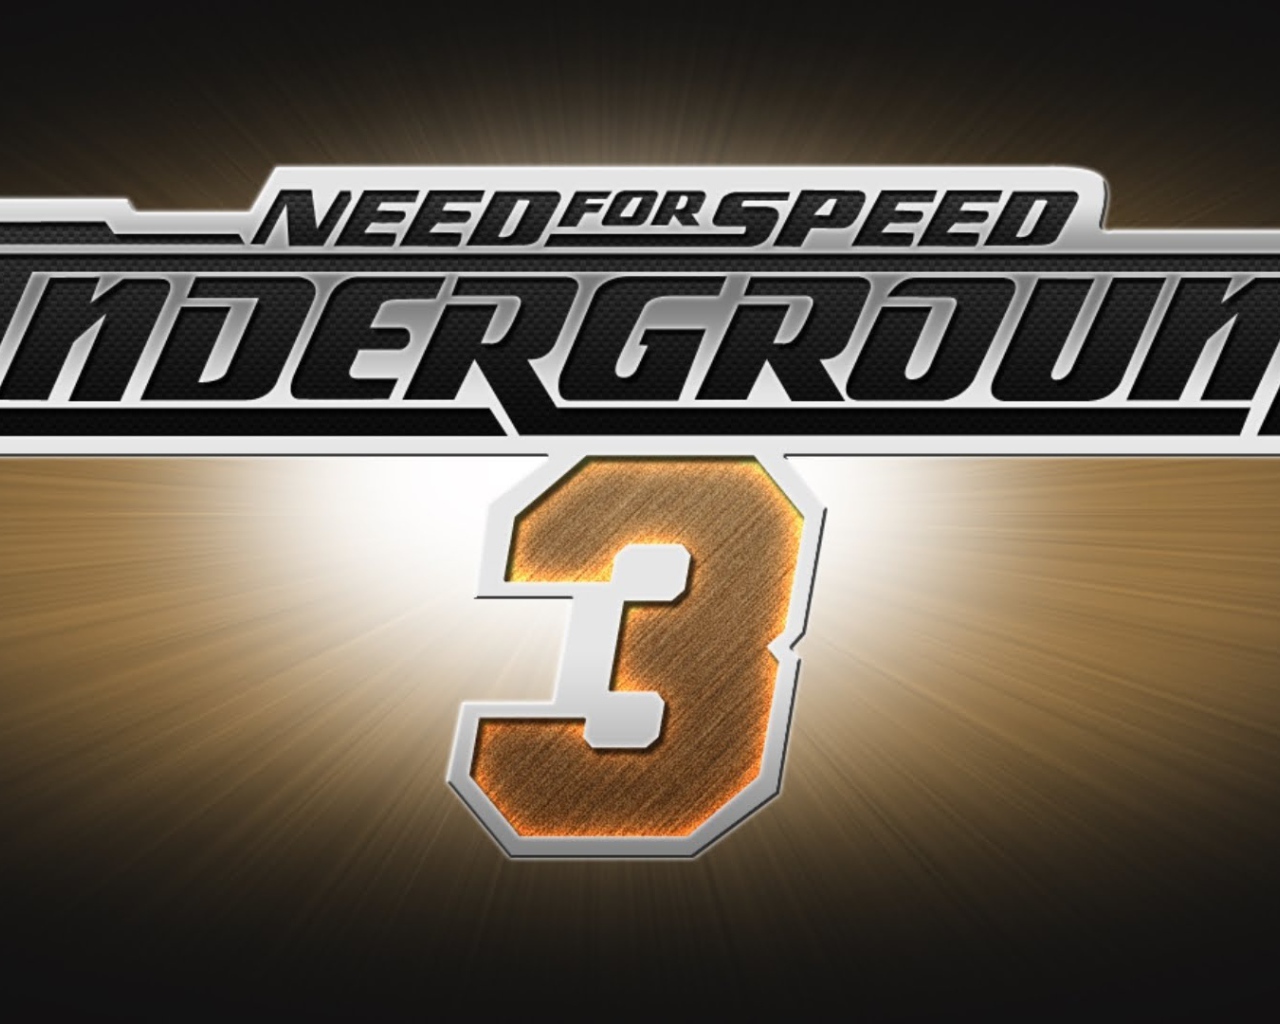 Логотип игры Need For Speed 2017 Underground 3 